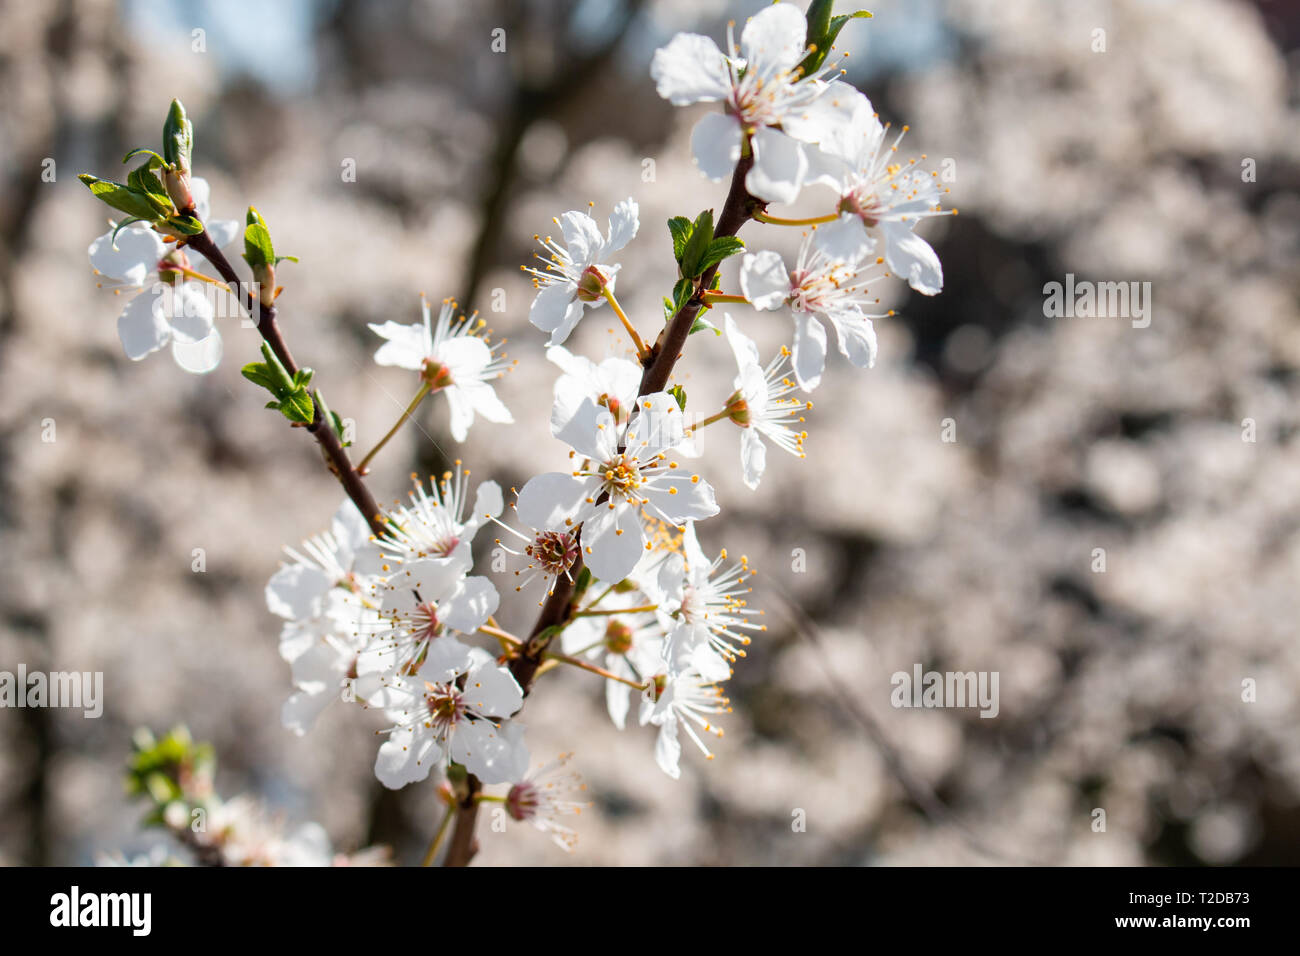 Hermoso blanco cerezos en flor en la rama. Fondo difuminado. Foto de stock